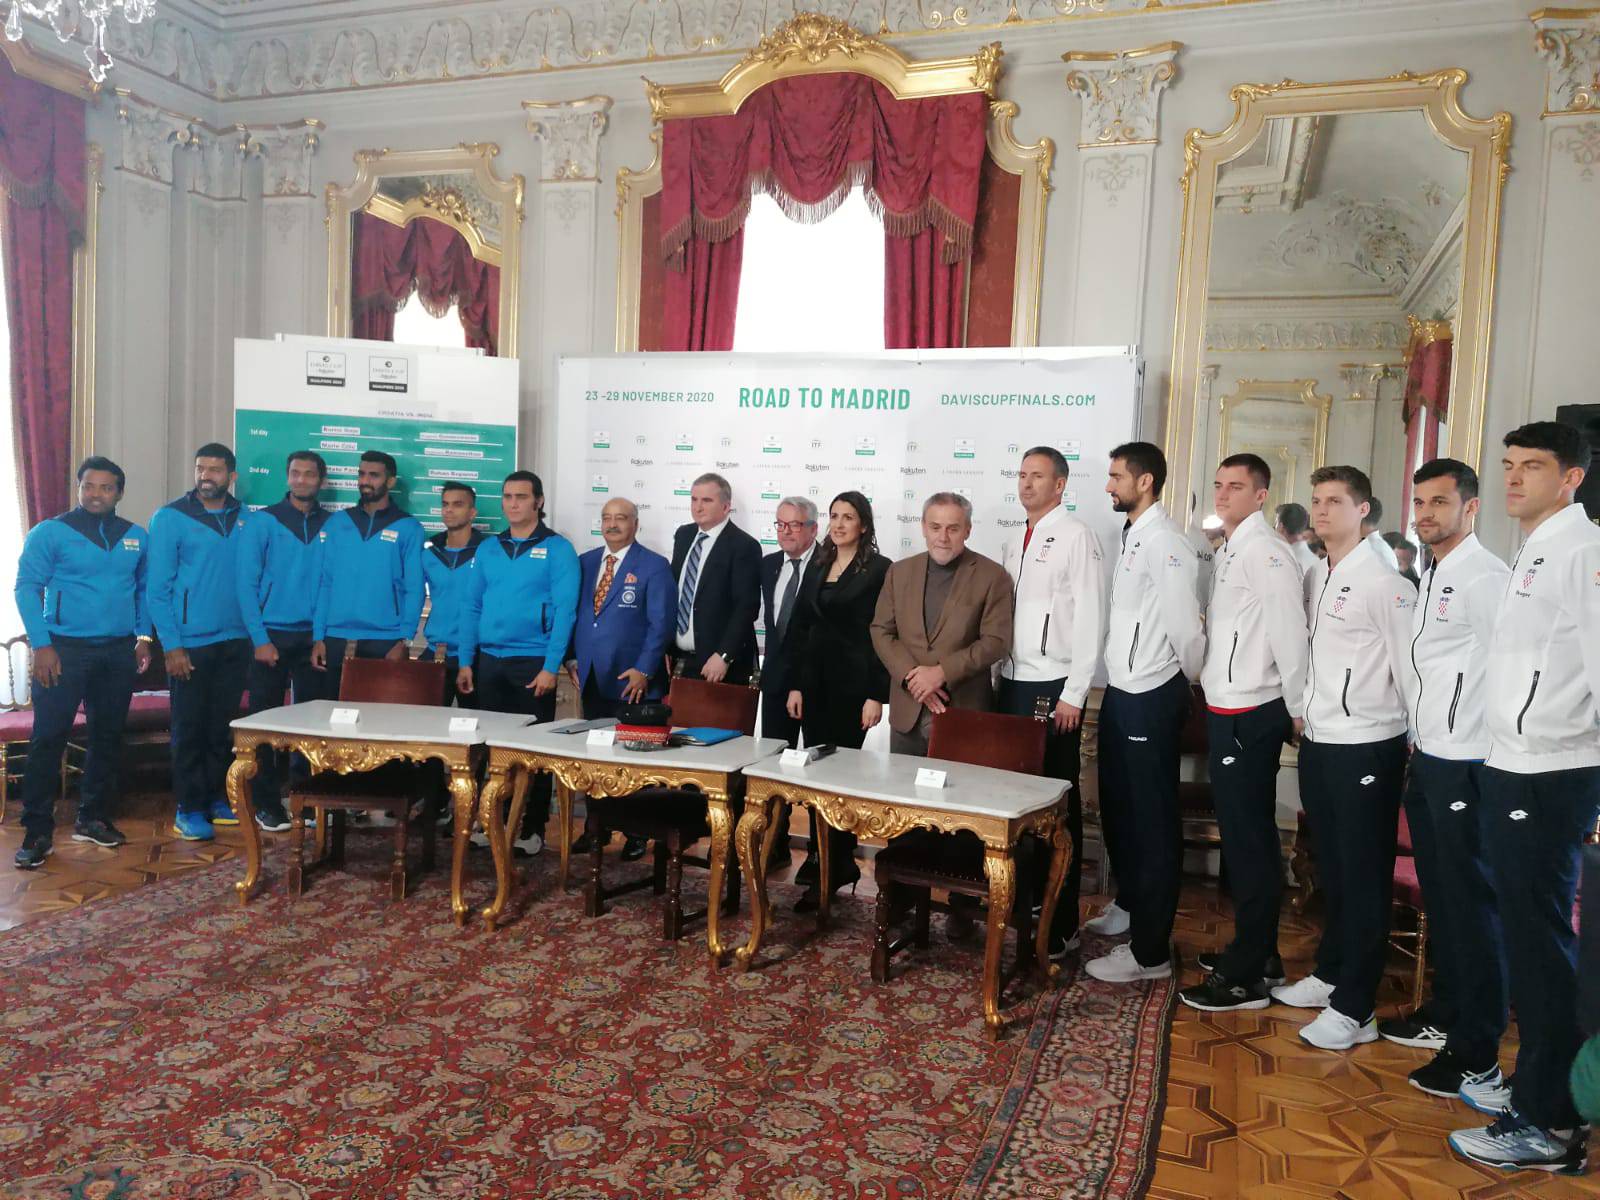 Gojo ipak u sastavu za Davis Cup, Marin Čilić igrat će drugi